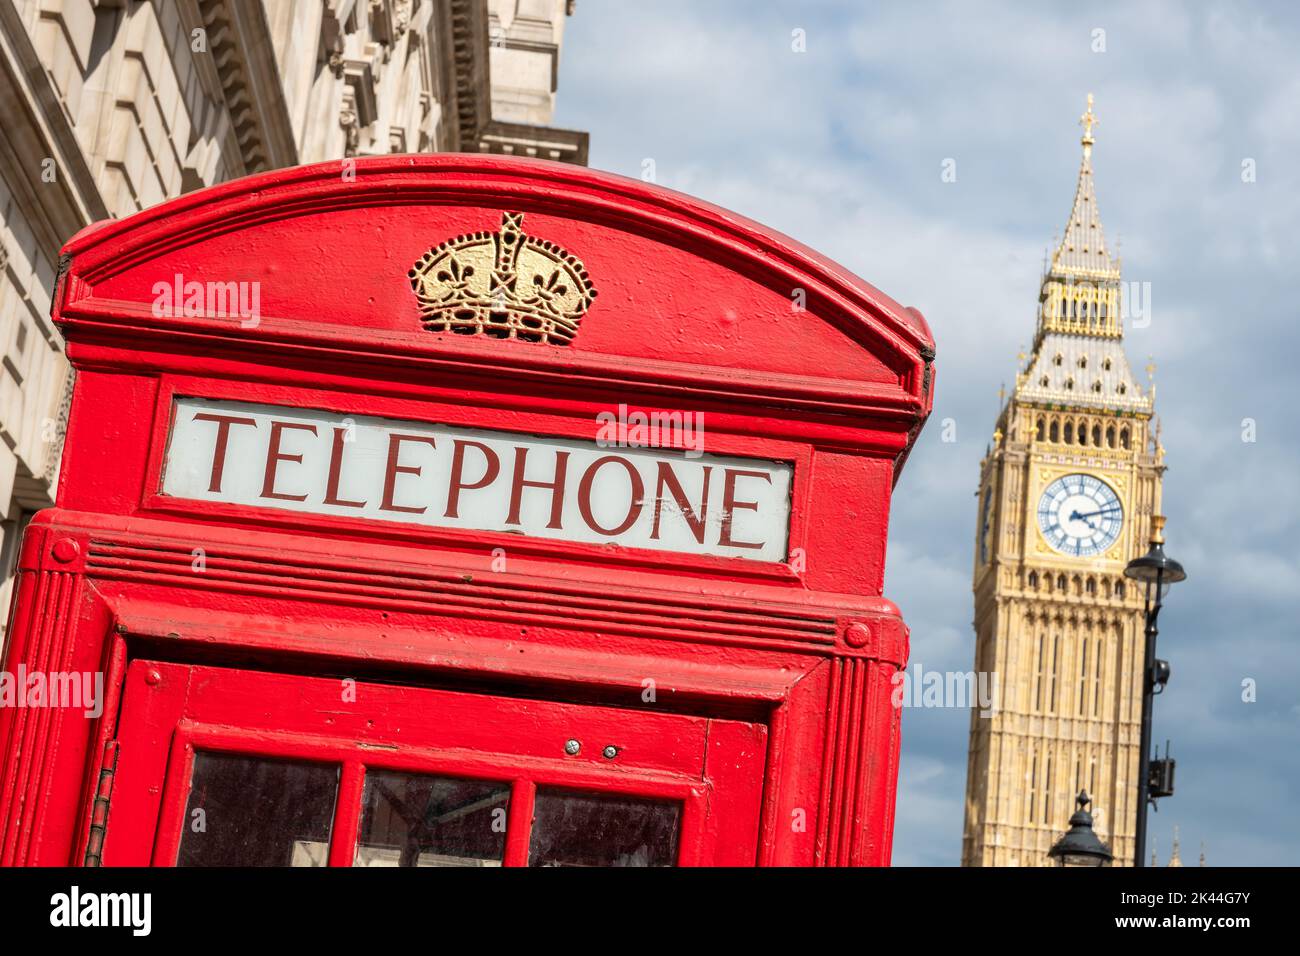 Typische rote Telefonbox mit Big Ben im Hintergrund. London, England. Selektiver Fokus Stockfoto